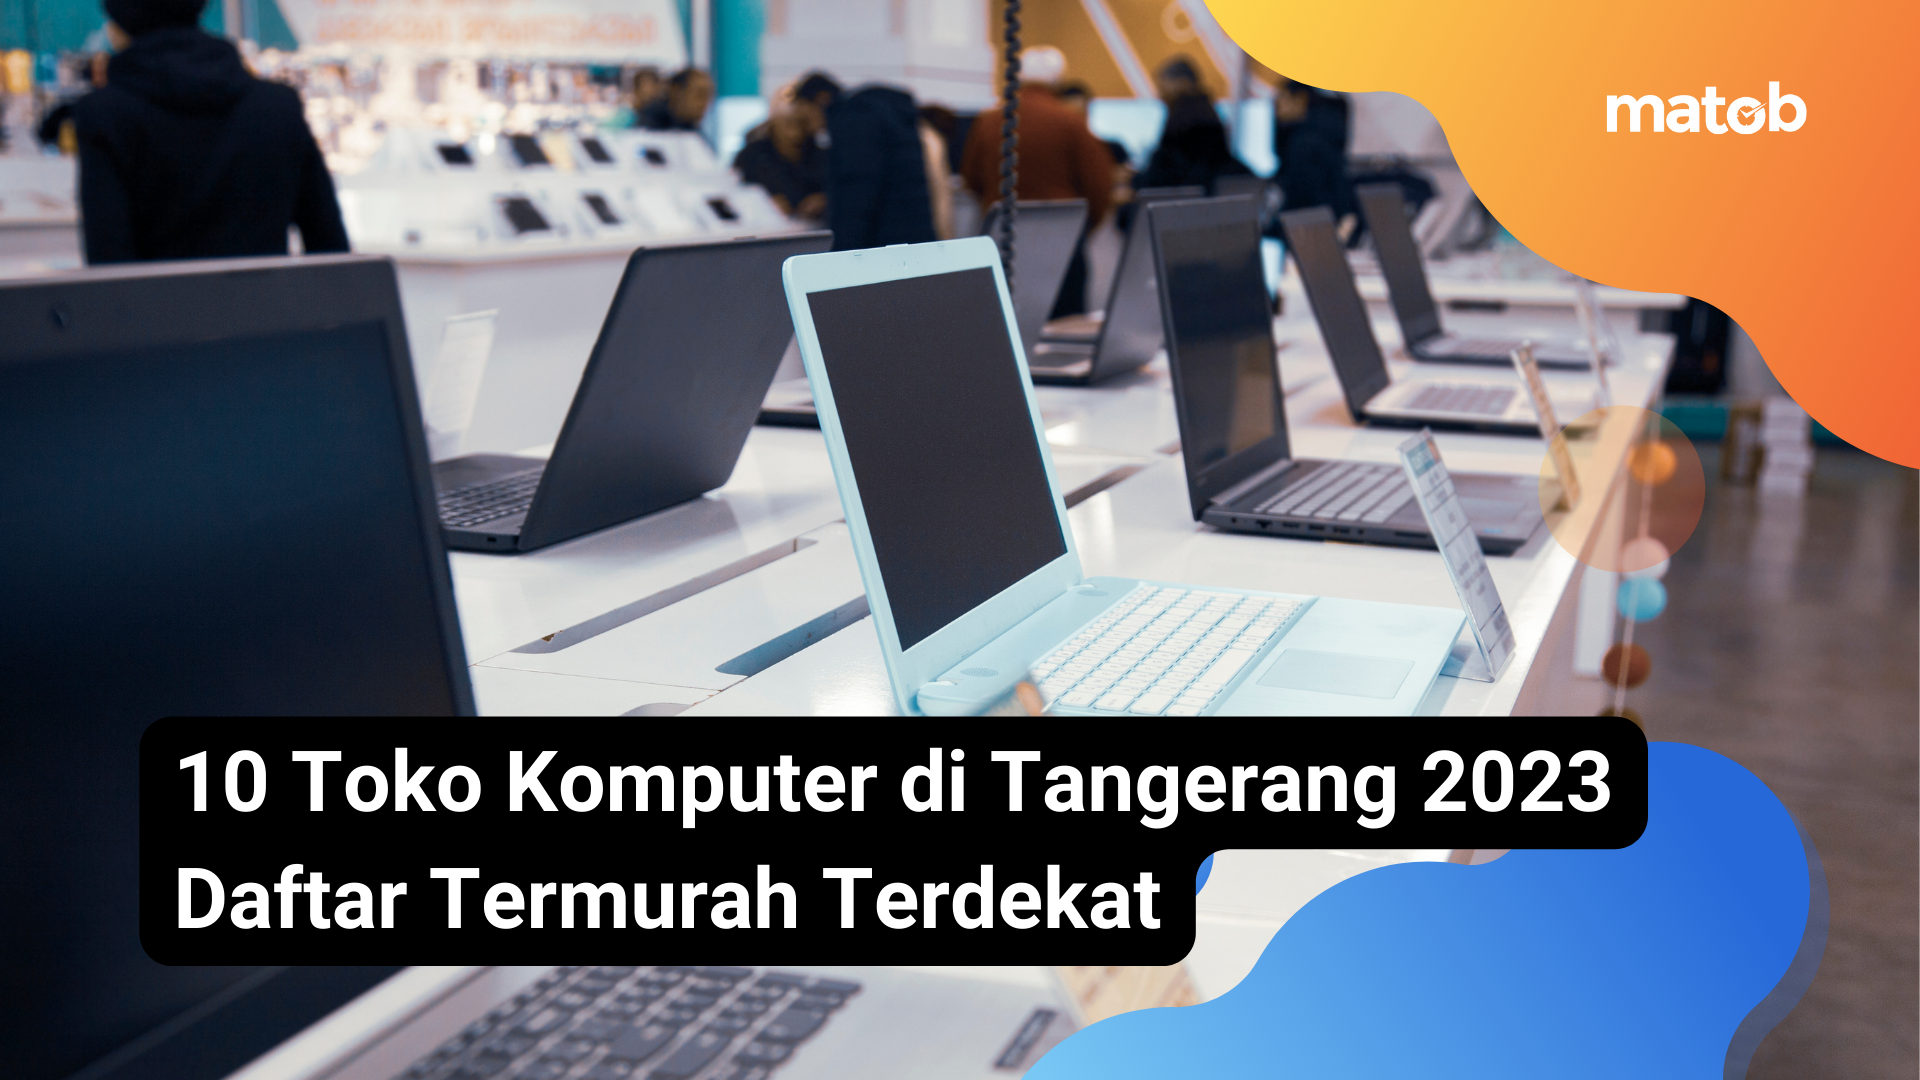 3.1 Matob Bisnis 10 Toko Komputer di Tangerang 2023 Daftar Termurah Terdekat